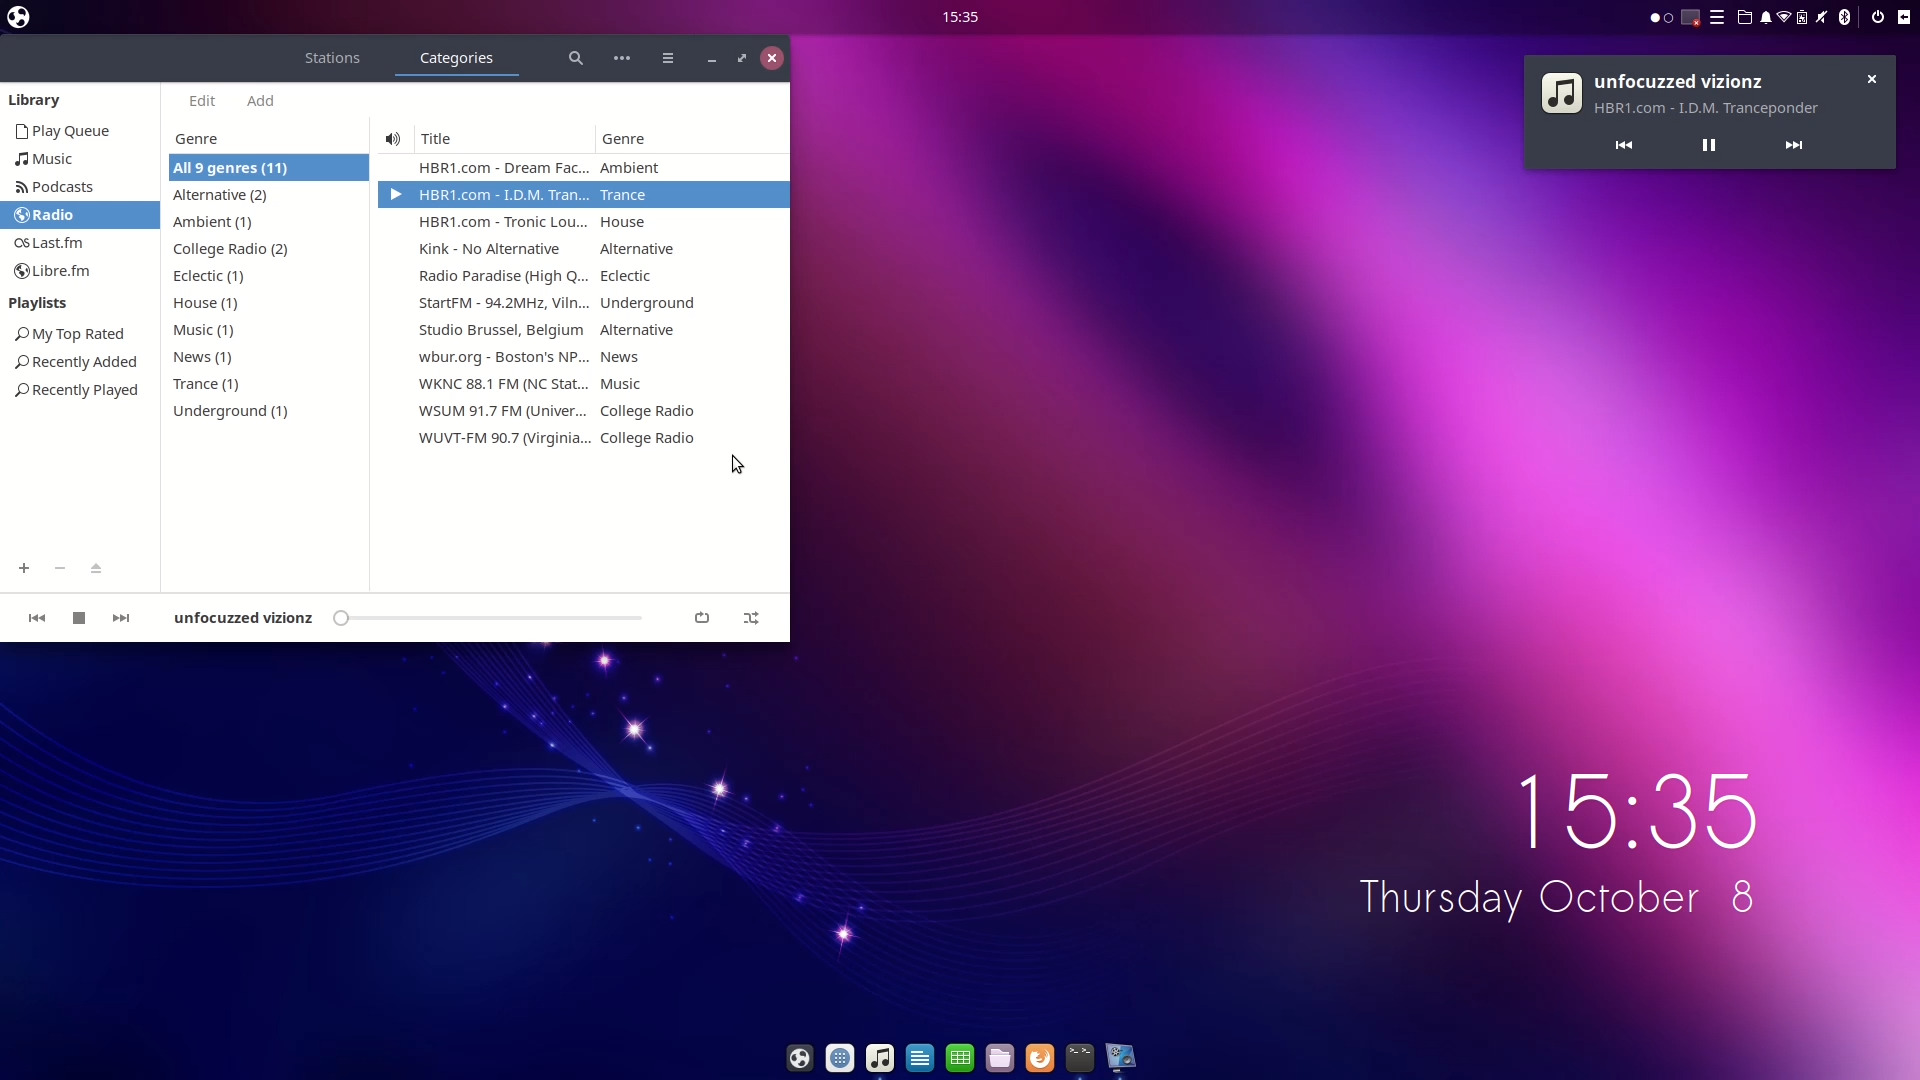 Ubuntu Budgie 20.10 Groovy Gorilla released OpenSourceFeed